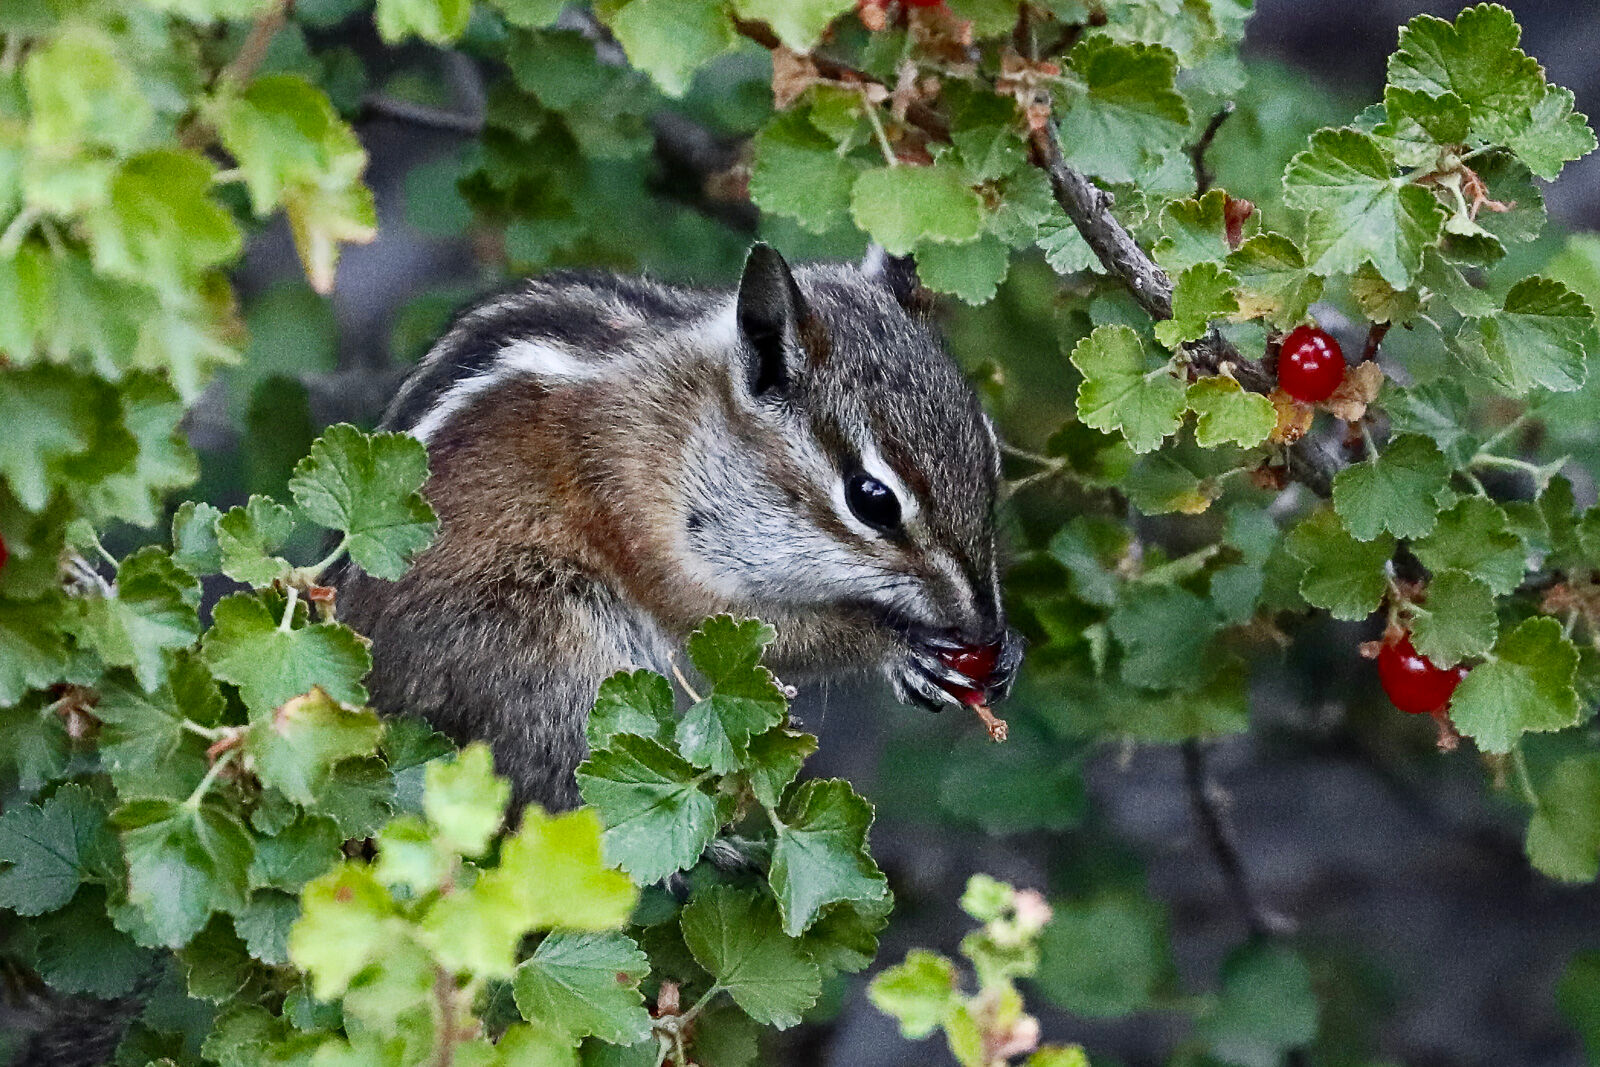 A least chipmunk near the hoodoos enjoying a berry